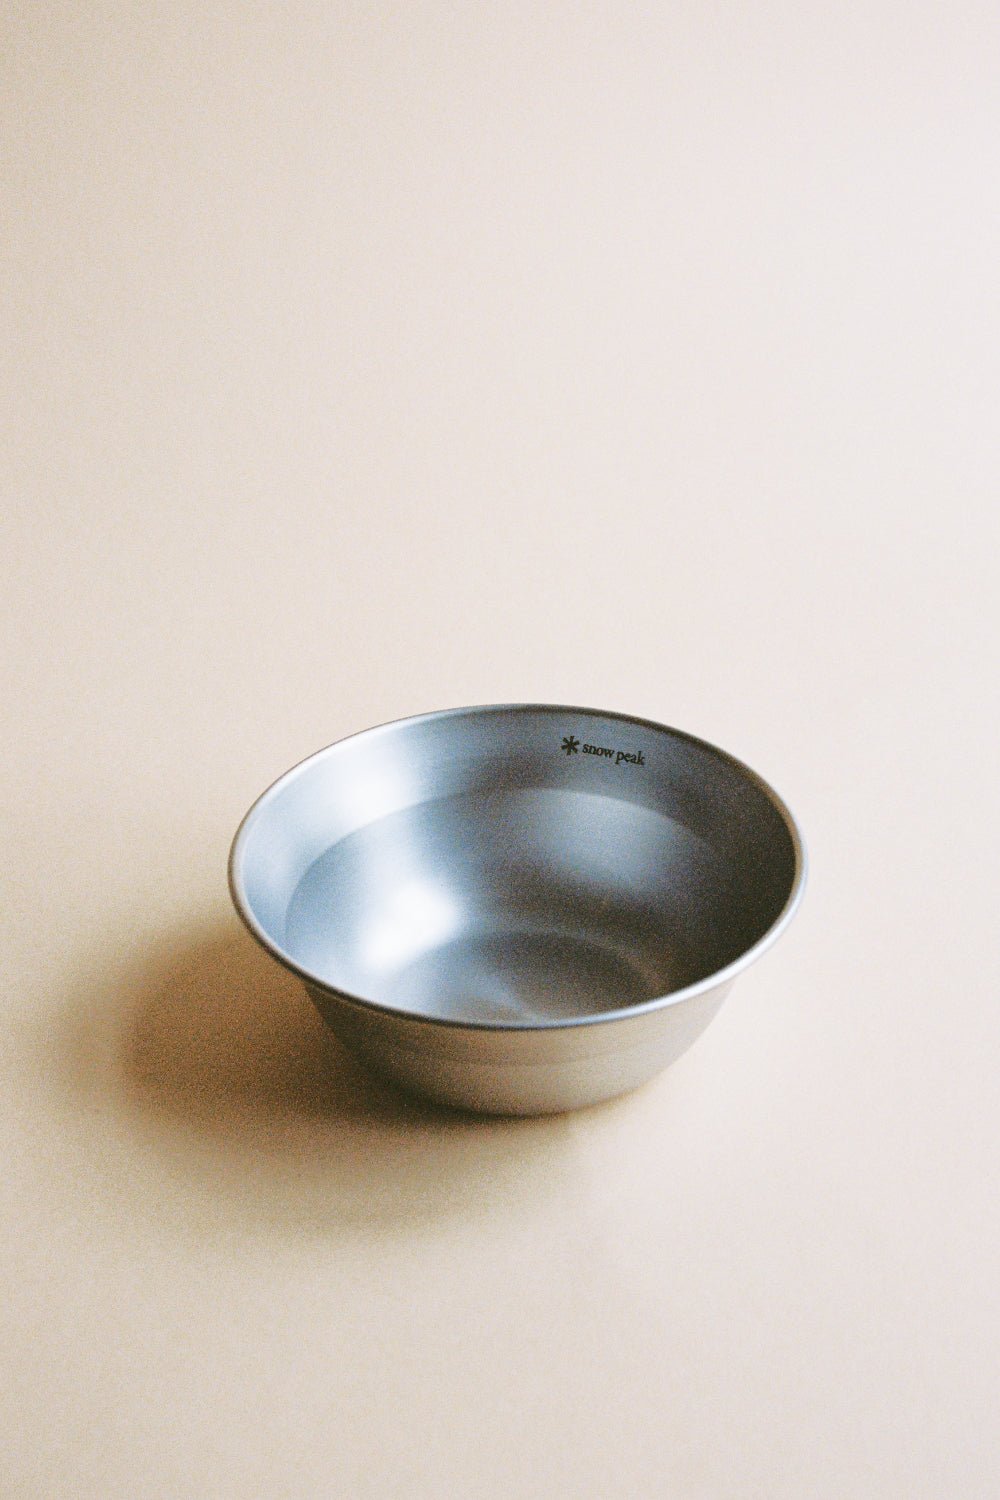 Snow Peak Tableware Stainless Steel Bowl Medium | Coffee Outdoors